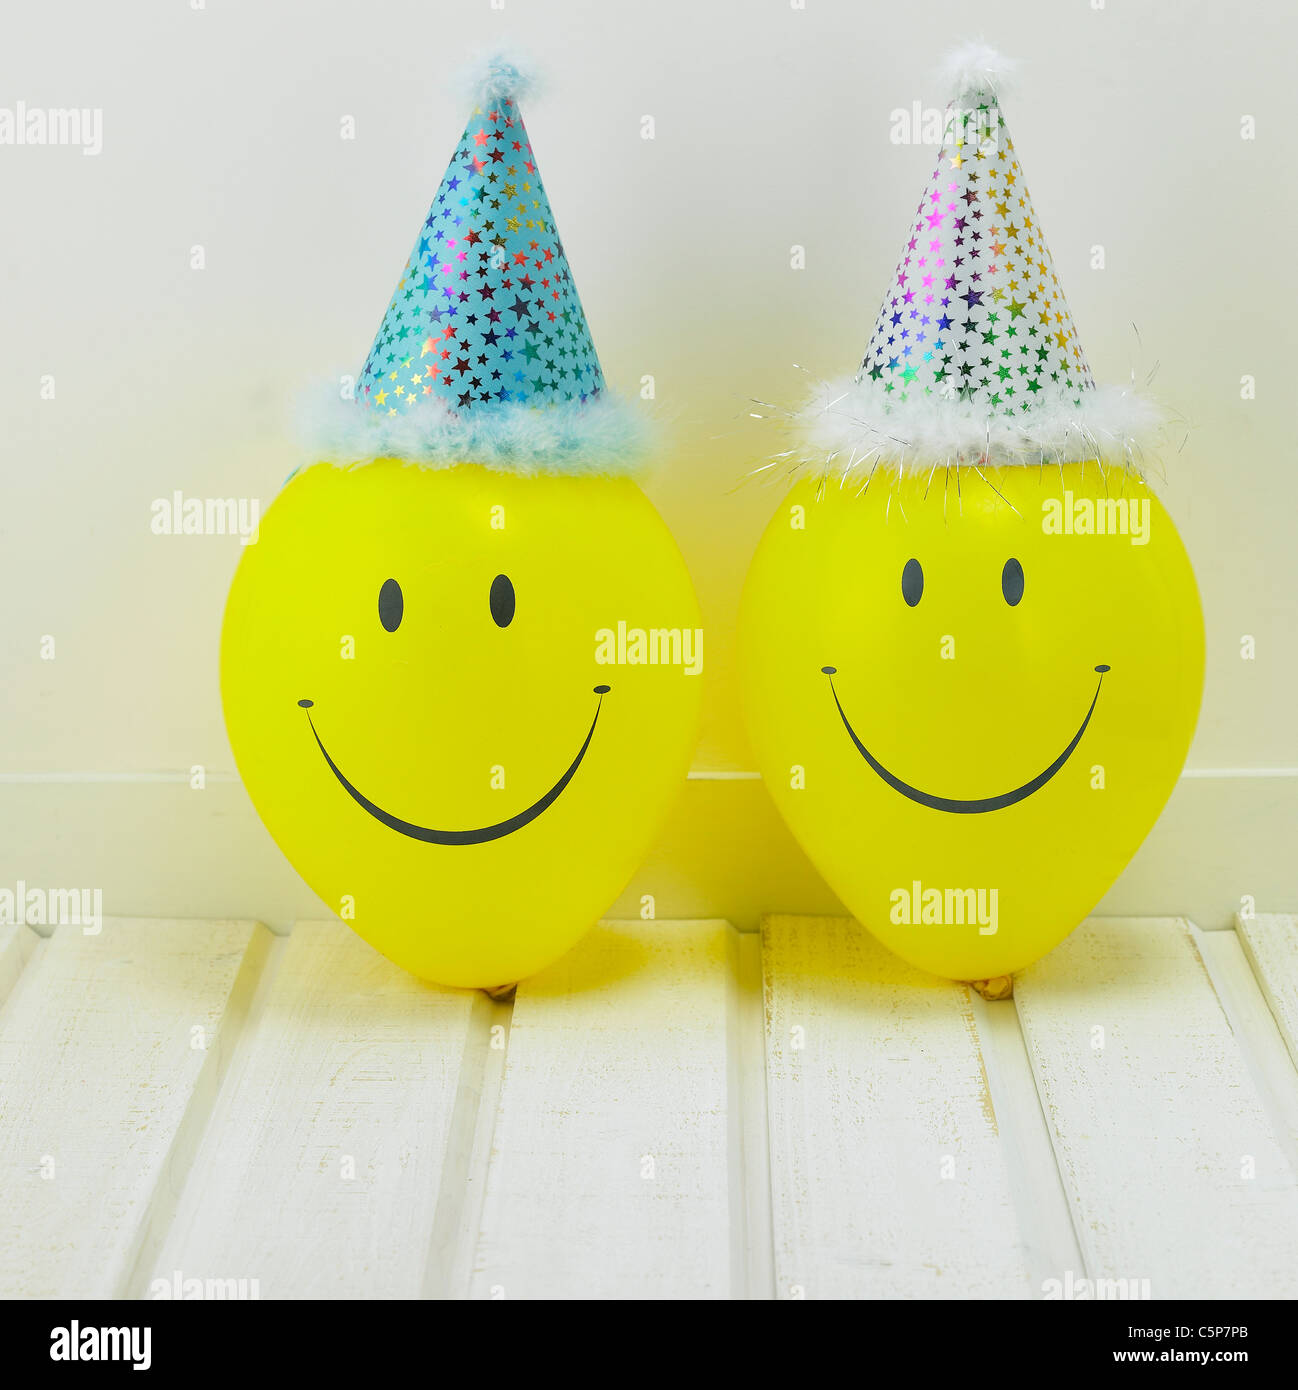 Deux ballons wearing party hat Banque D'Images